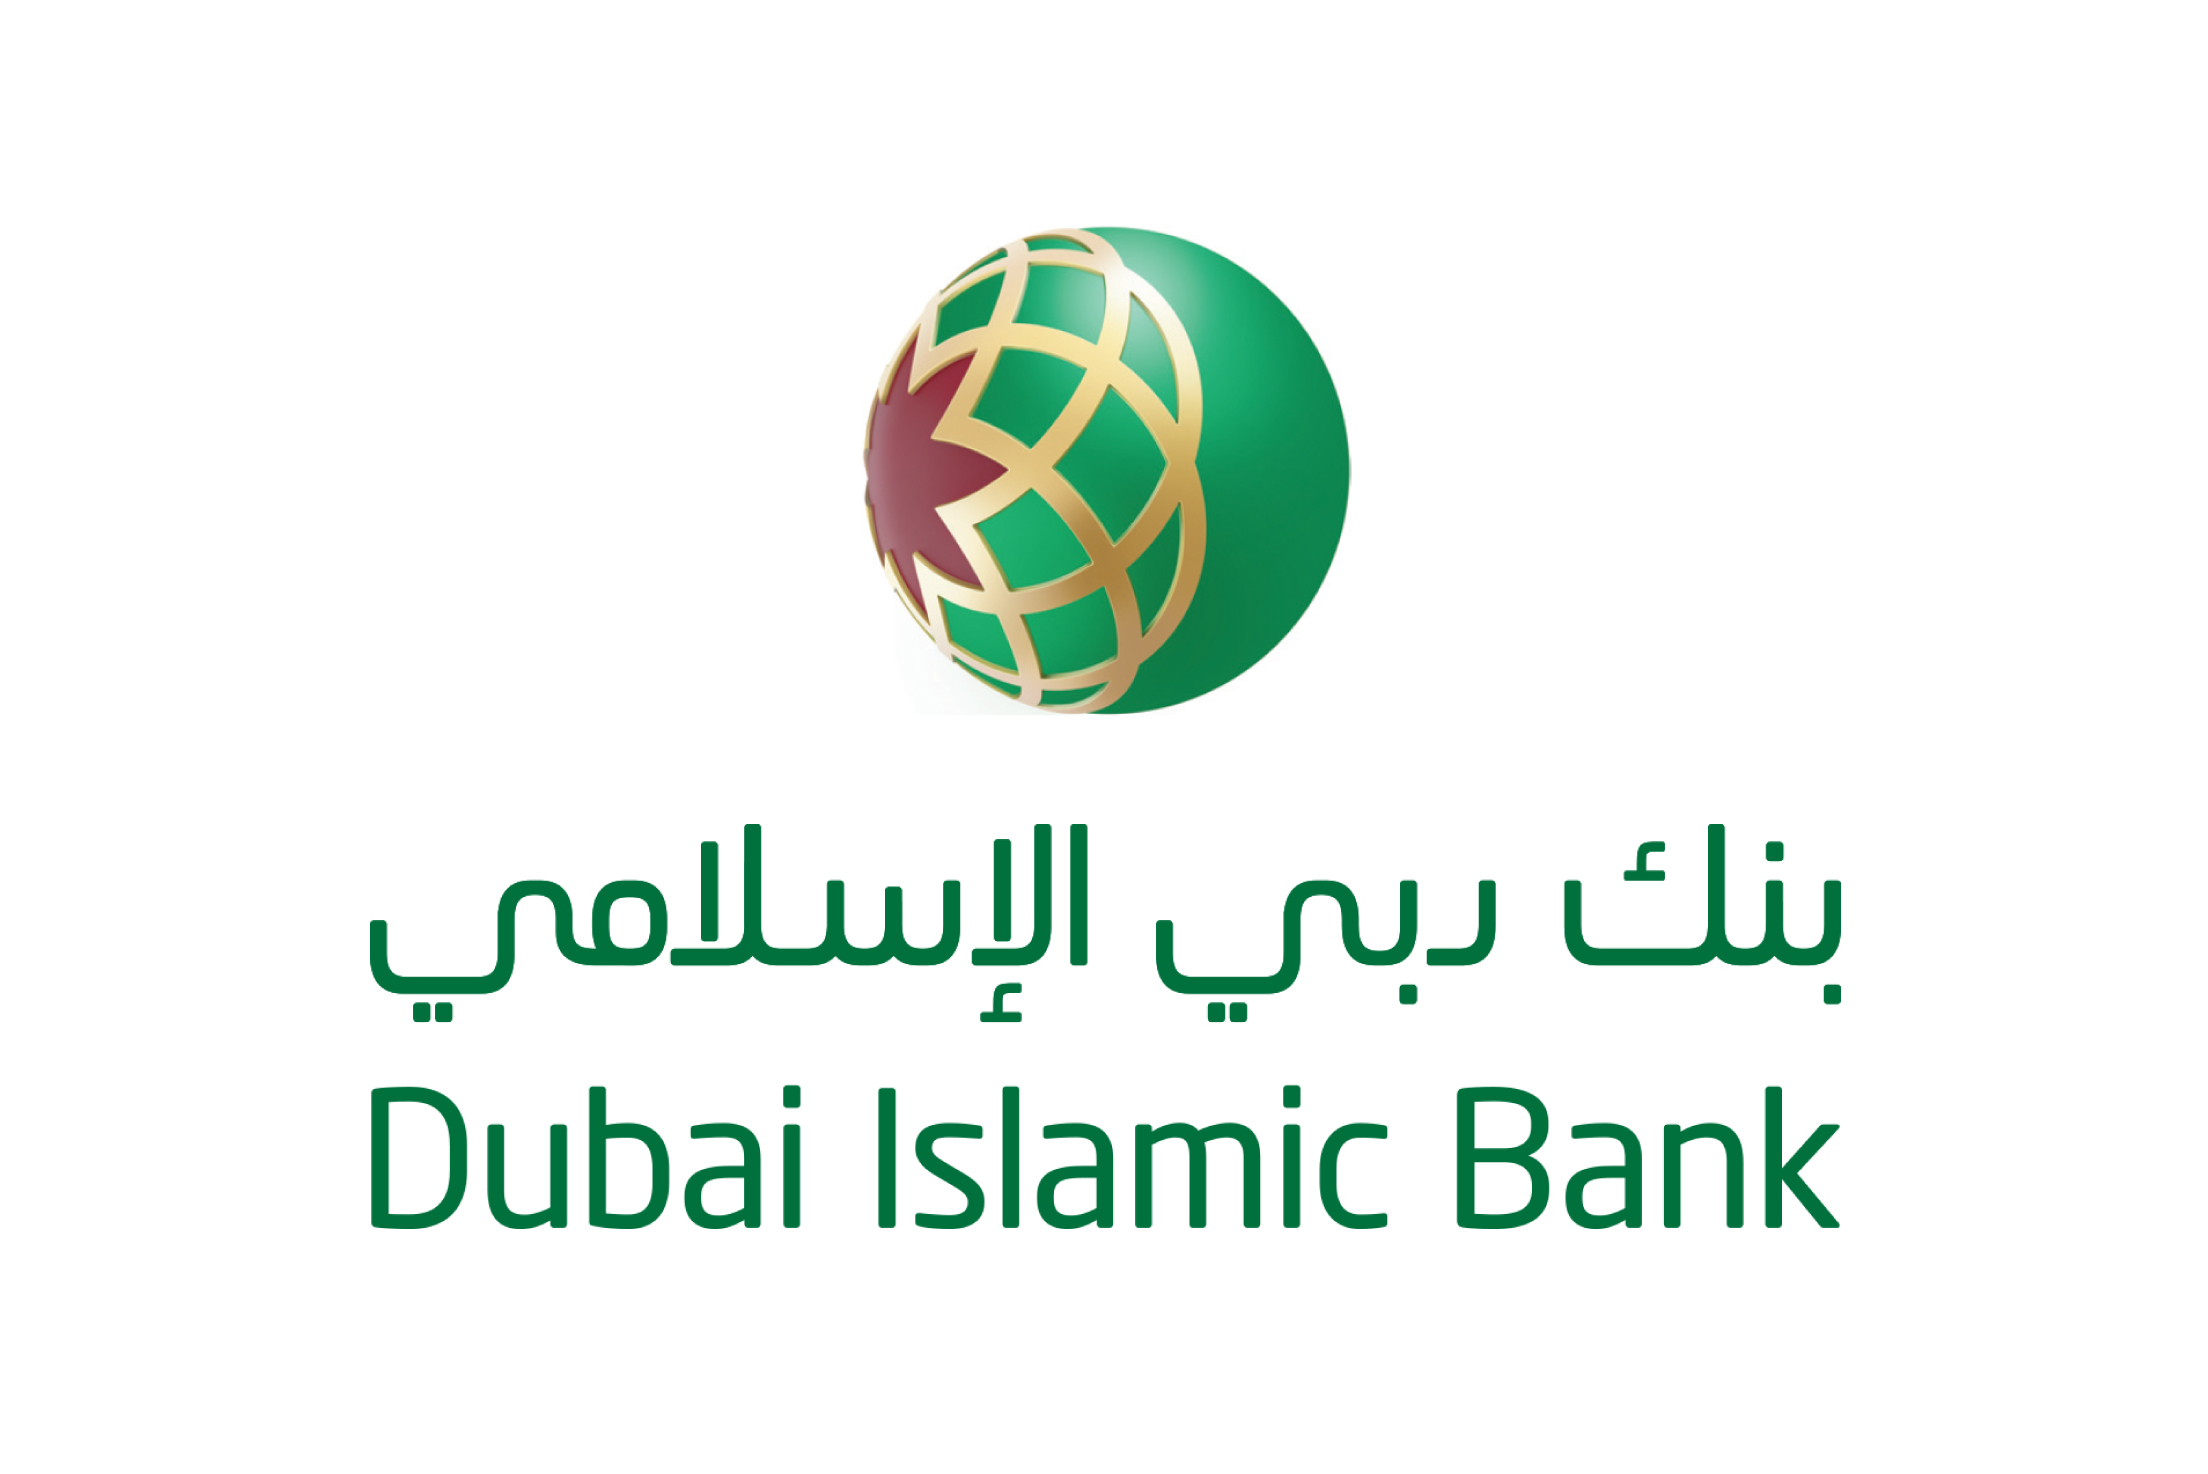 Dubai Islamic Bank donates AED